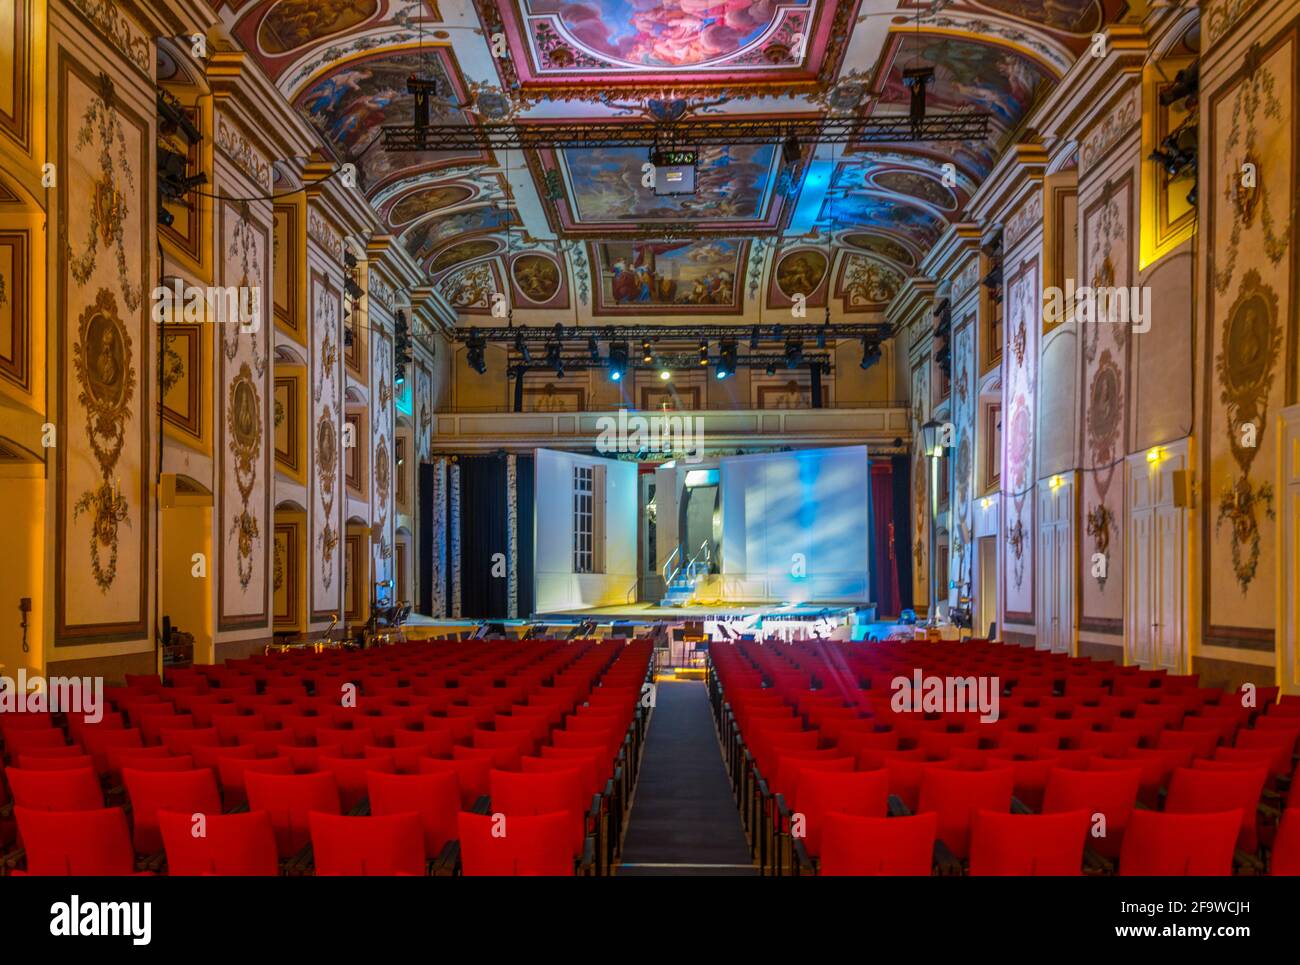 EISENSTADT, ÖSTERREICH, 18. JUNI 2016: Blick auf ein Theater im Inneren des berühmten esterhazy-Schlosses in der österreichischen Stadt Eisenstadt, Hauptstadt des Burgenlandes reg Stockfoto